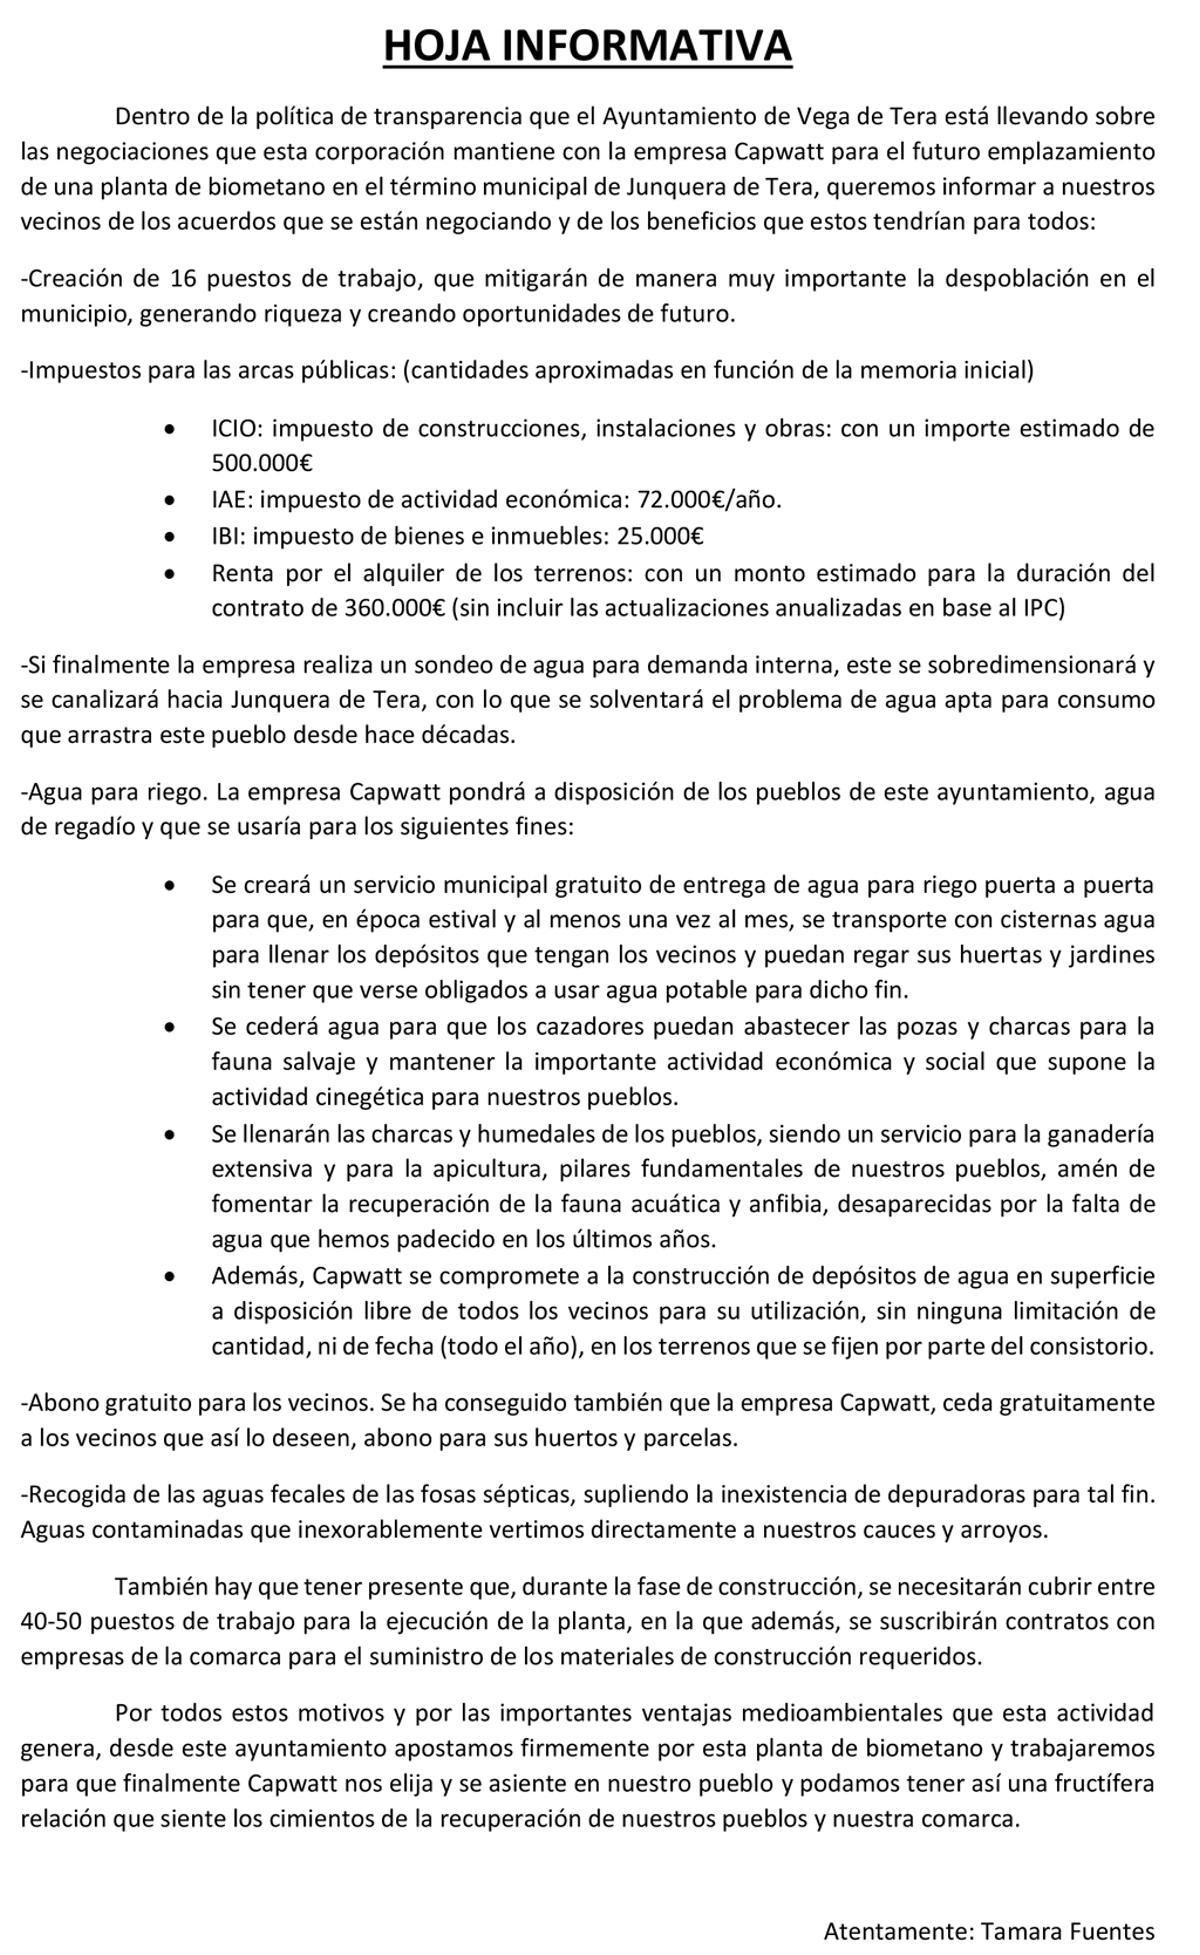 Nota informativa del Ayuntamiento de Vega de Tera firmado por la alcaldesa.